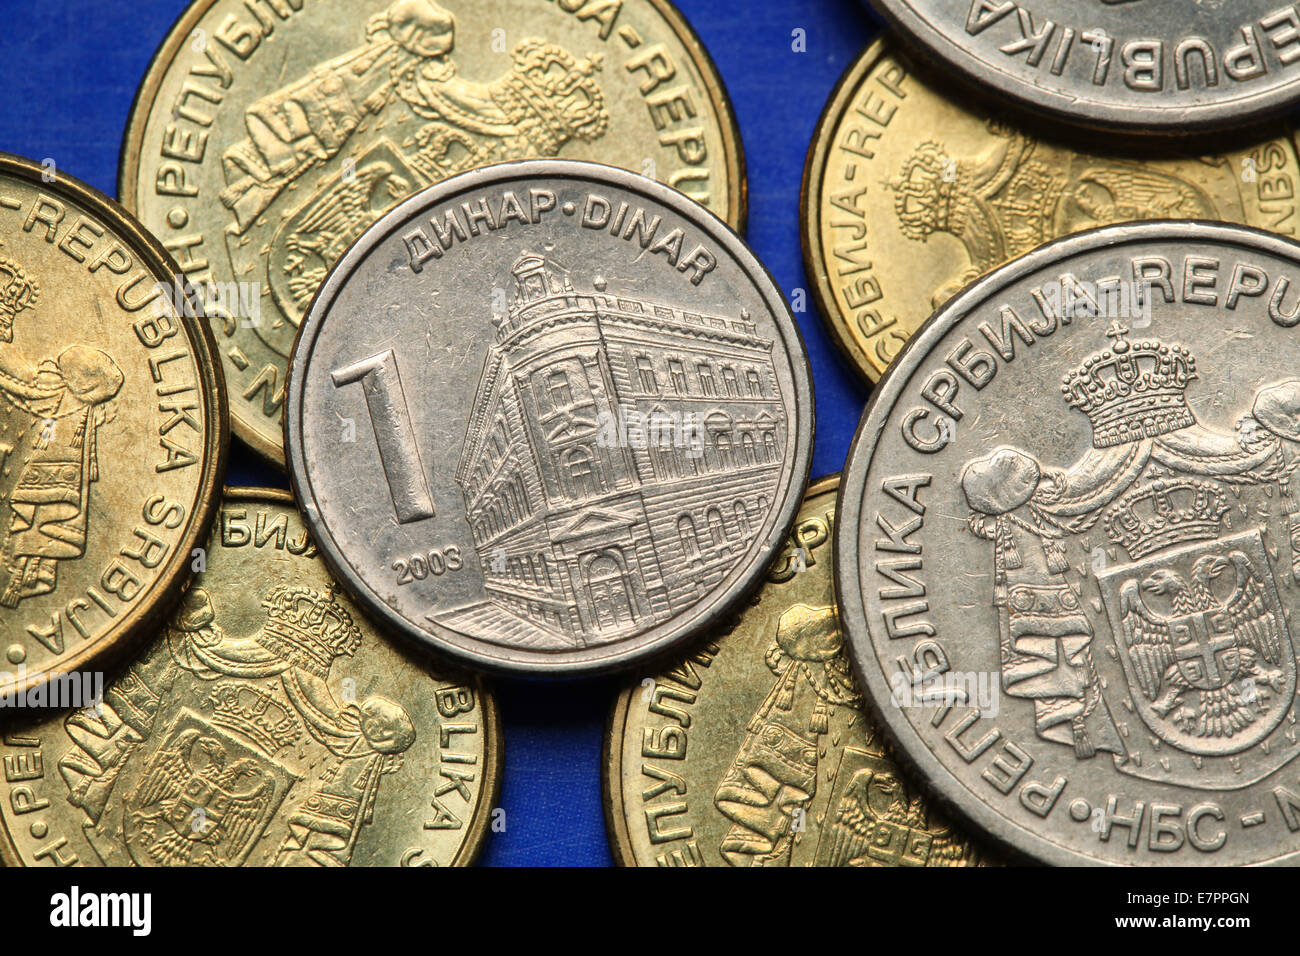 Pièces de monnaie de la Serbie. Le bâtiment de la Banque nationale de Serbie à Belgrade représenté dans la pièce d'un dinar serbe. Banque D'Images